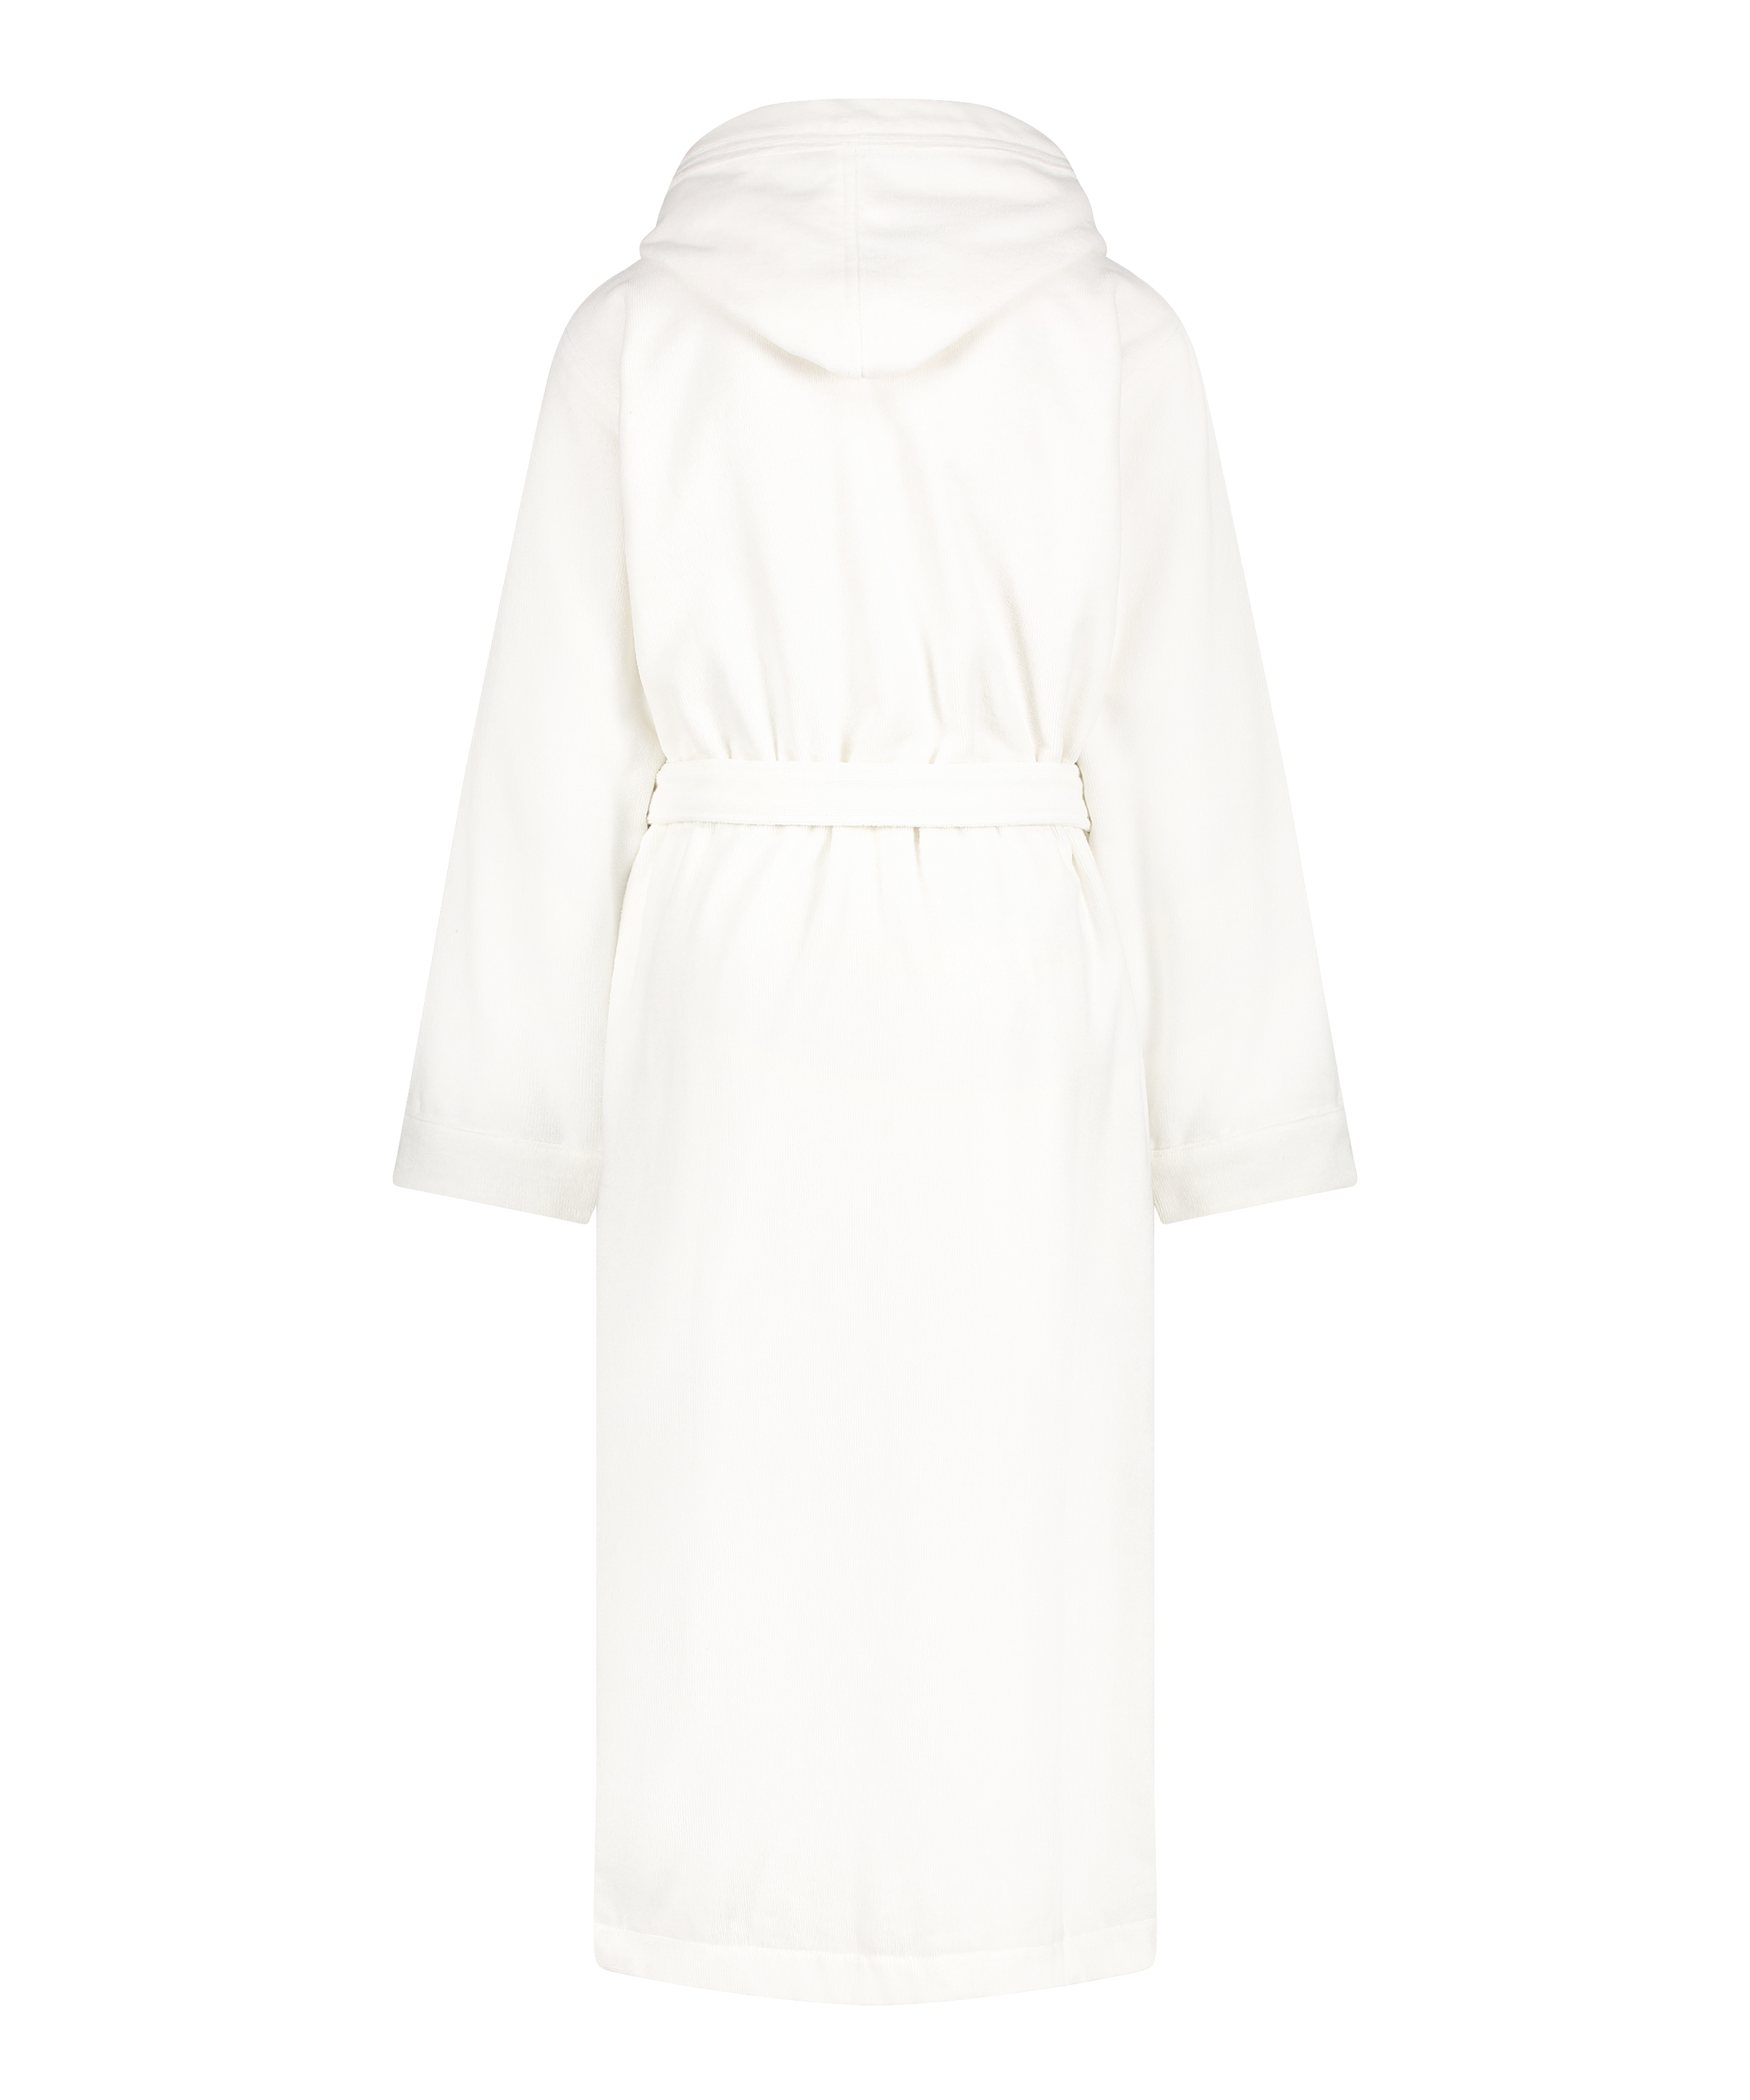 Long bathrobe, White, main